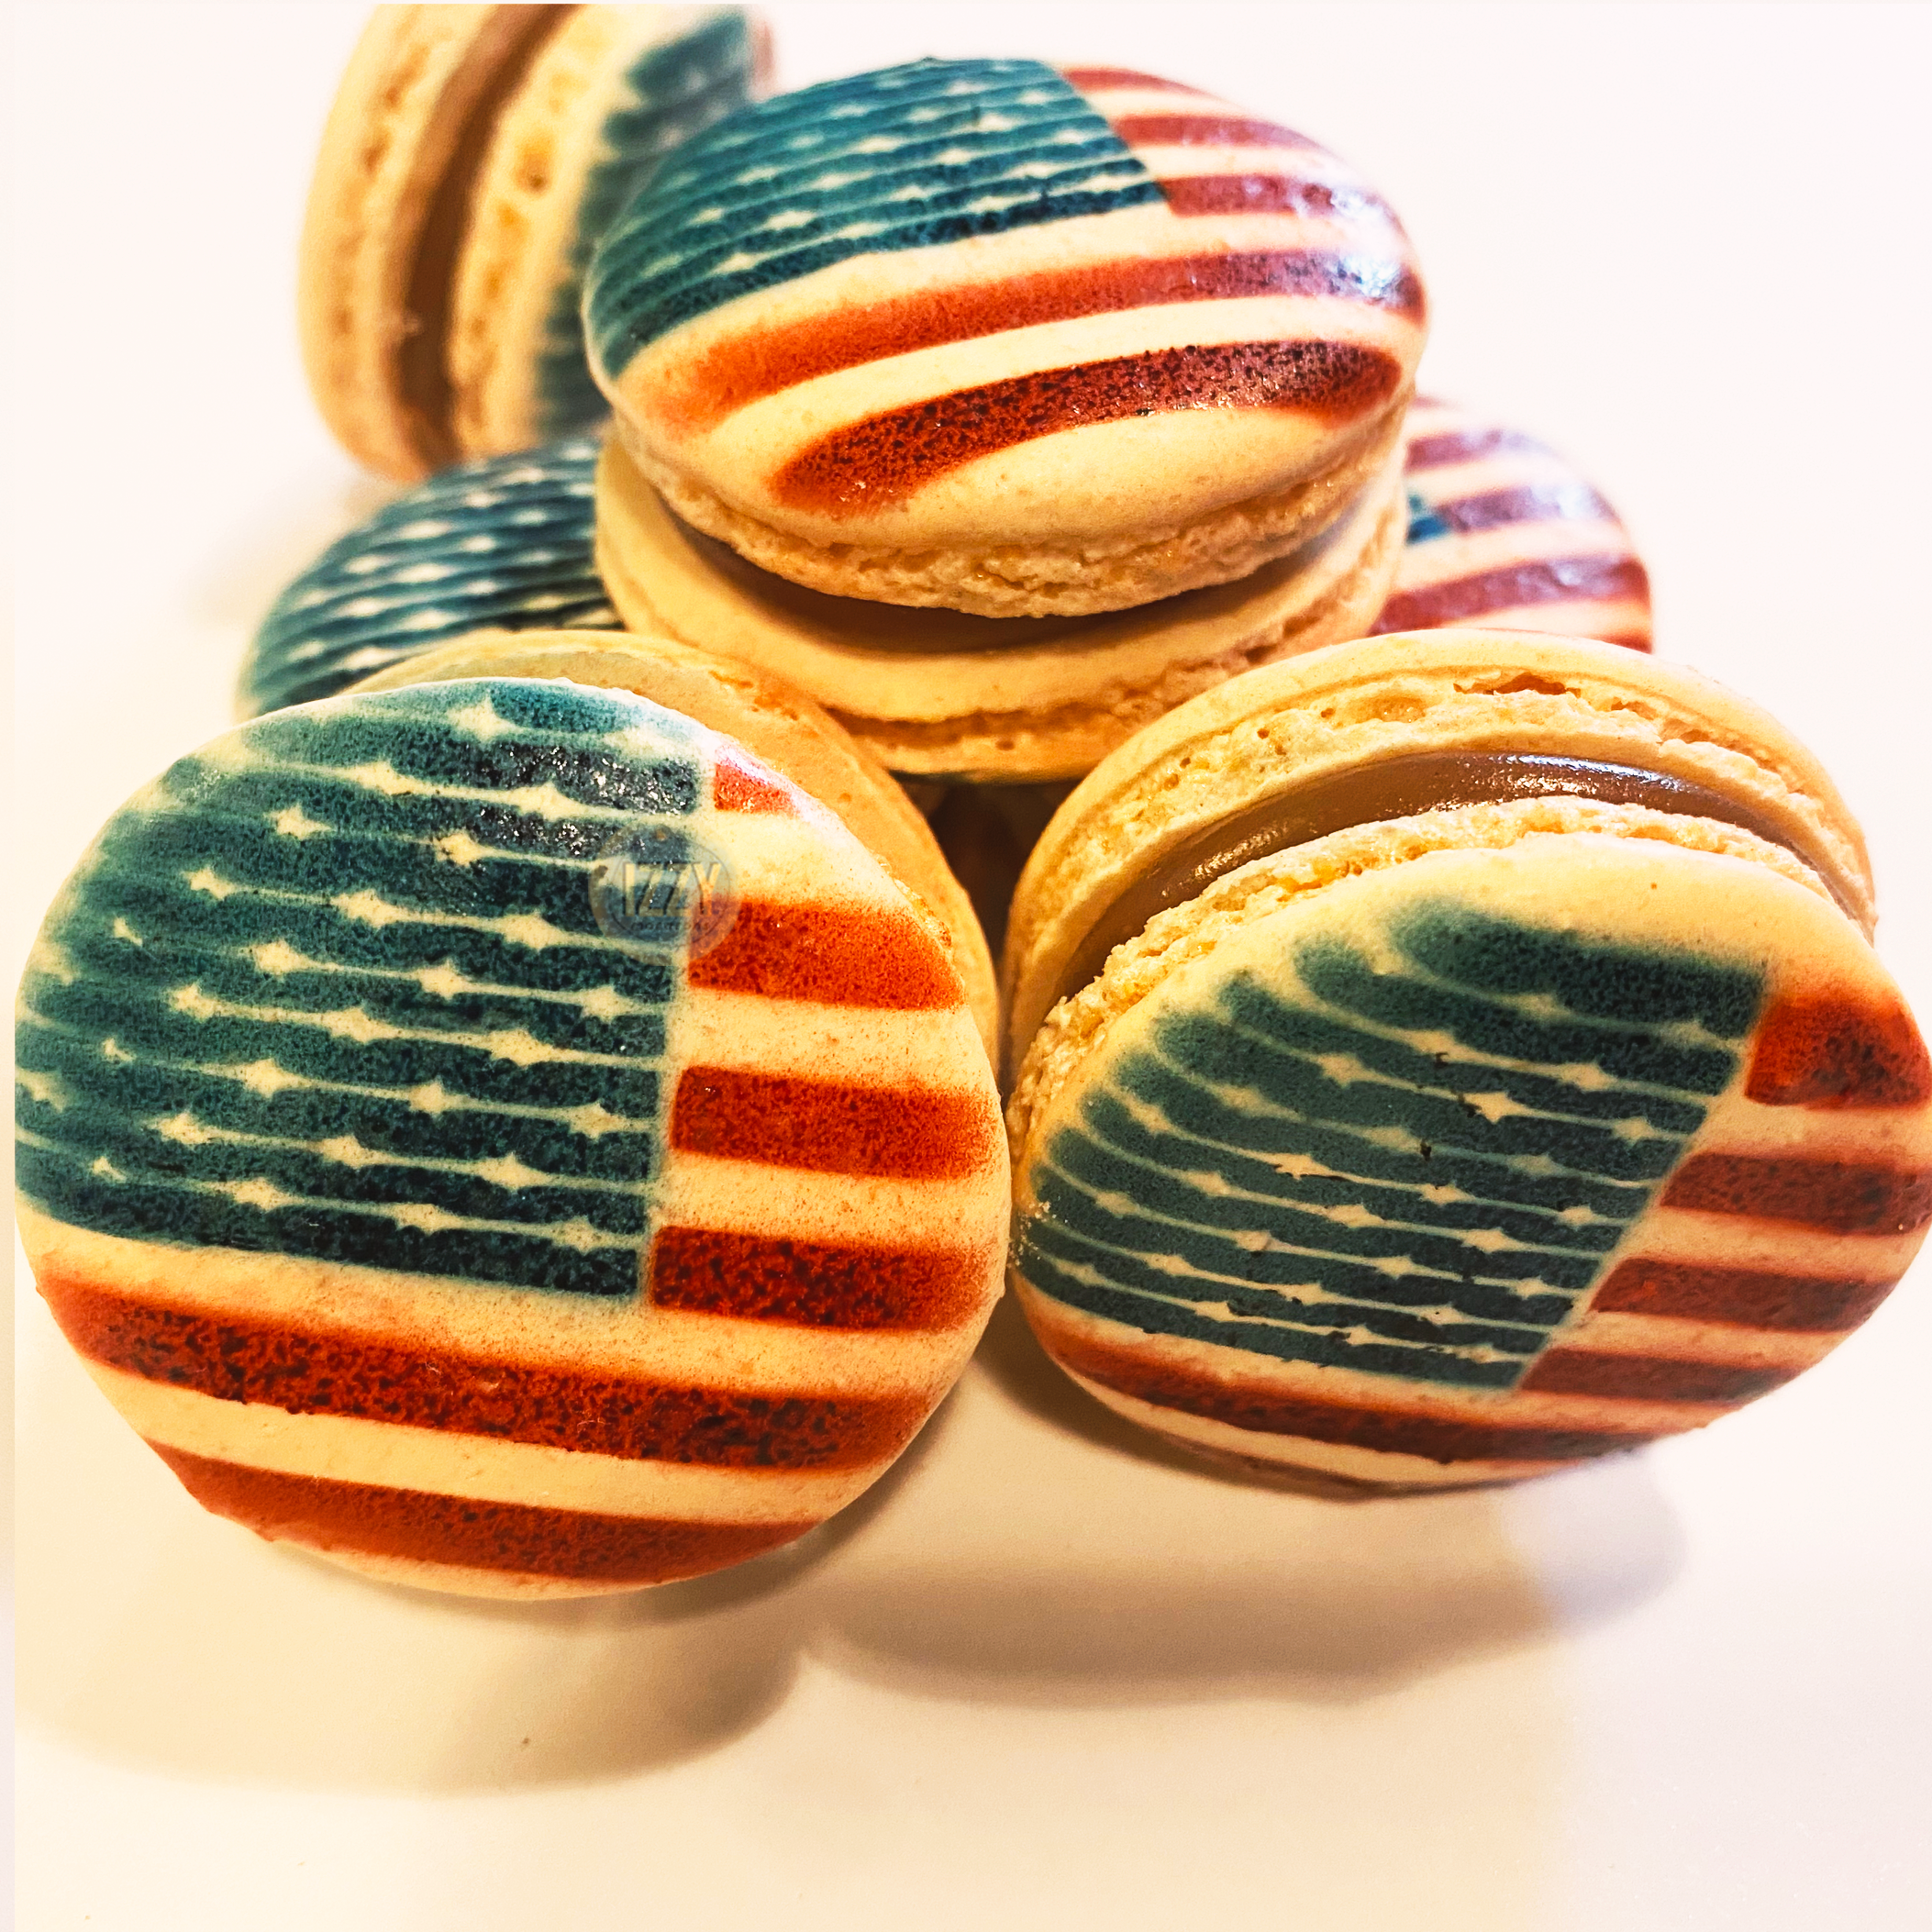 USA Macarons - Izzy Macarons